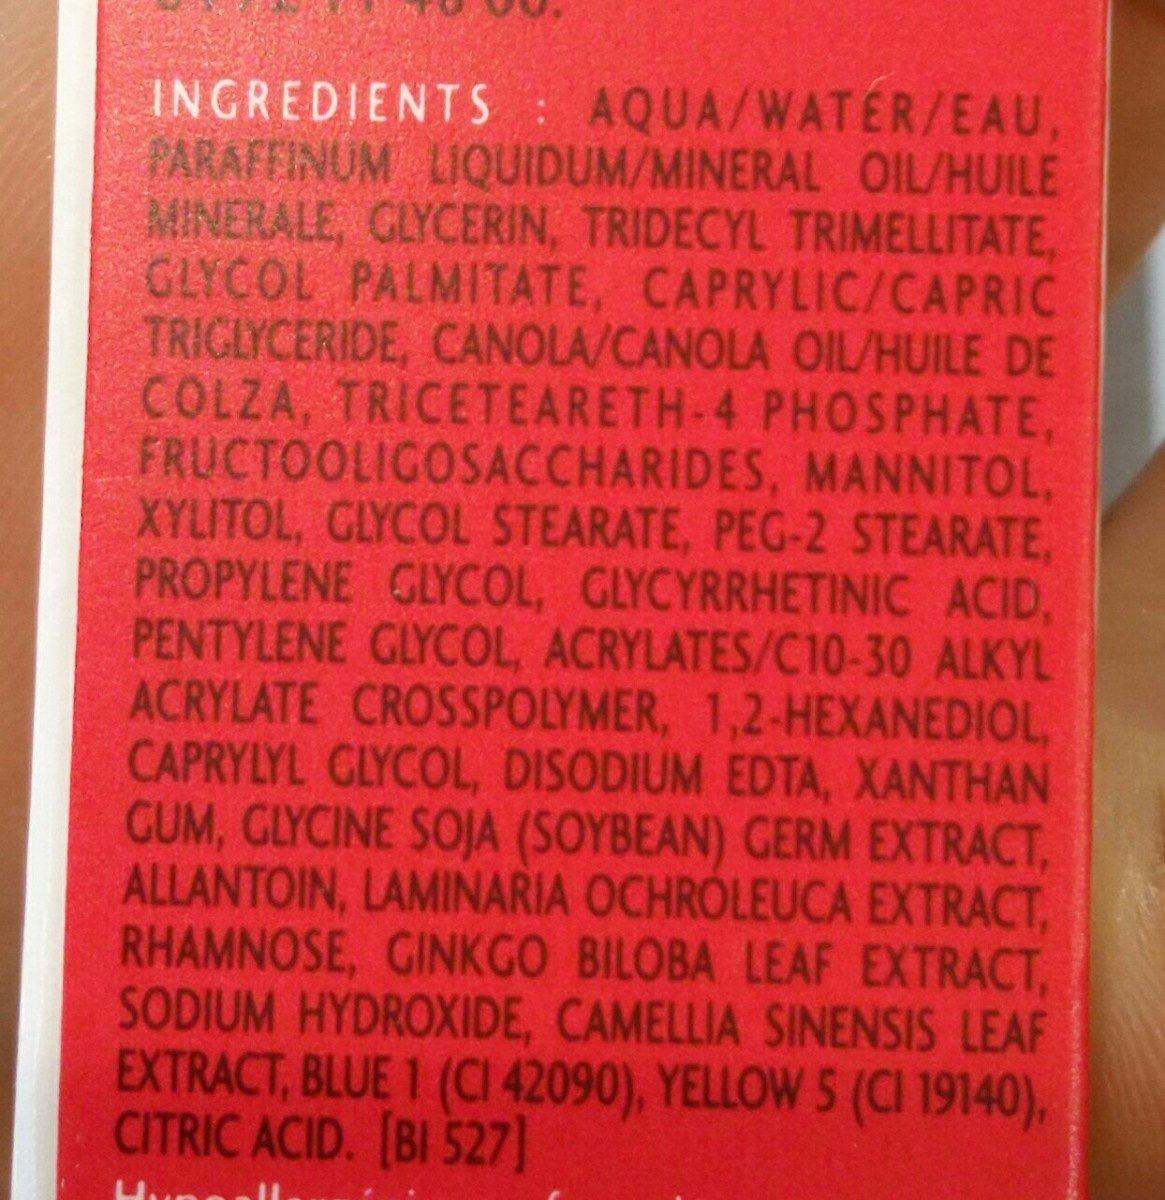 Bioderma - Crealine Ar Creme - Ingredientes - fr